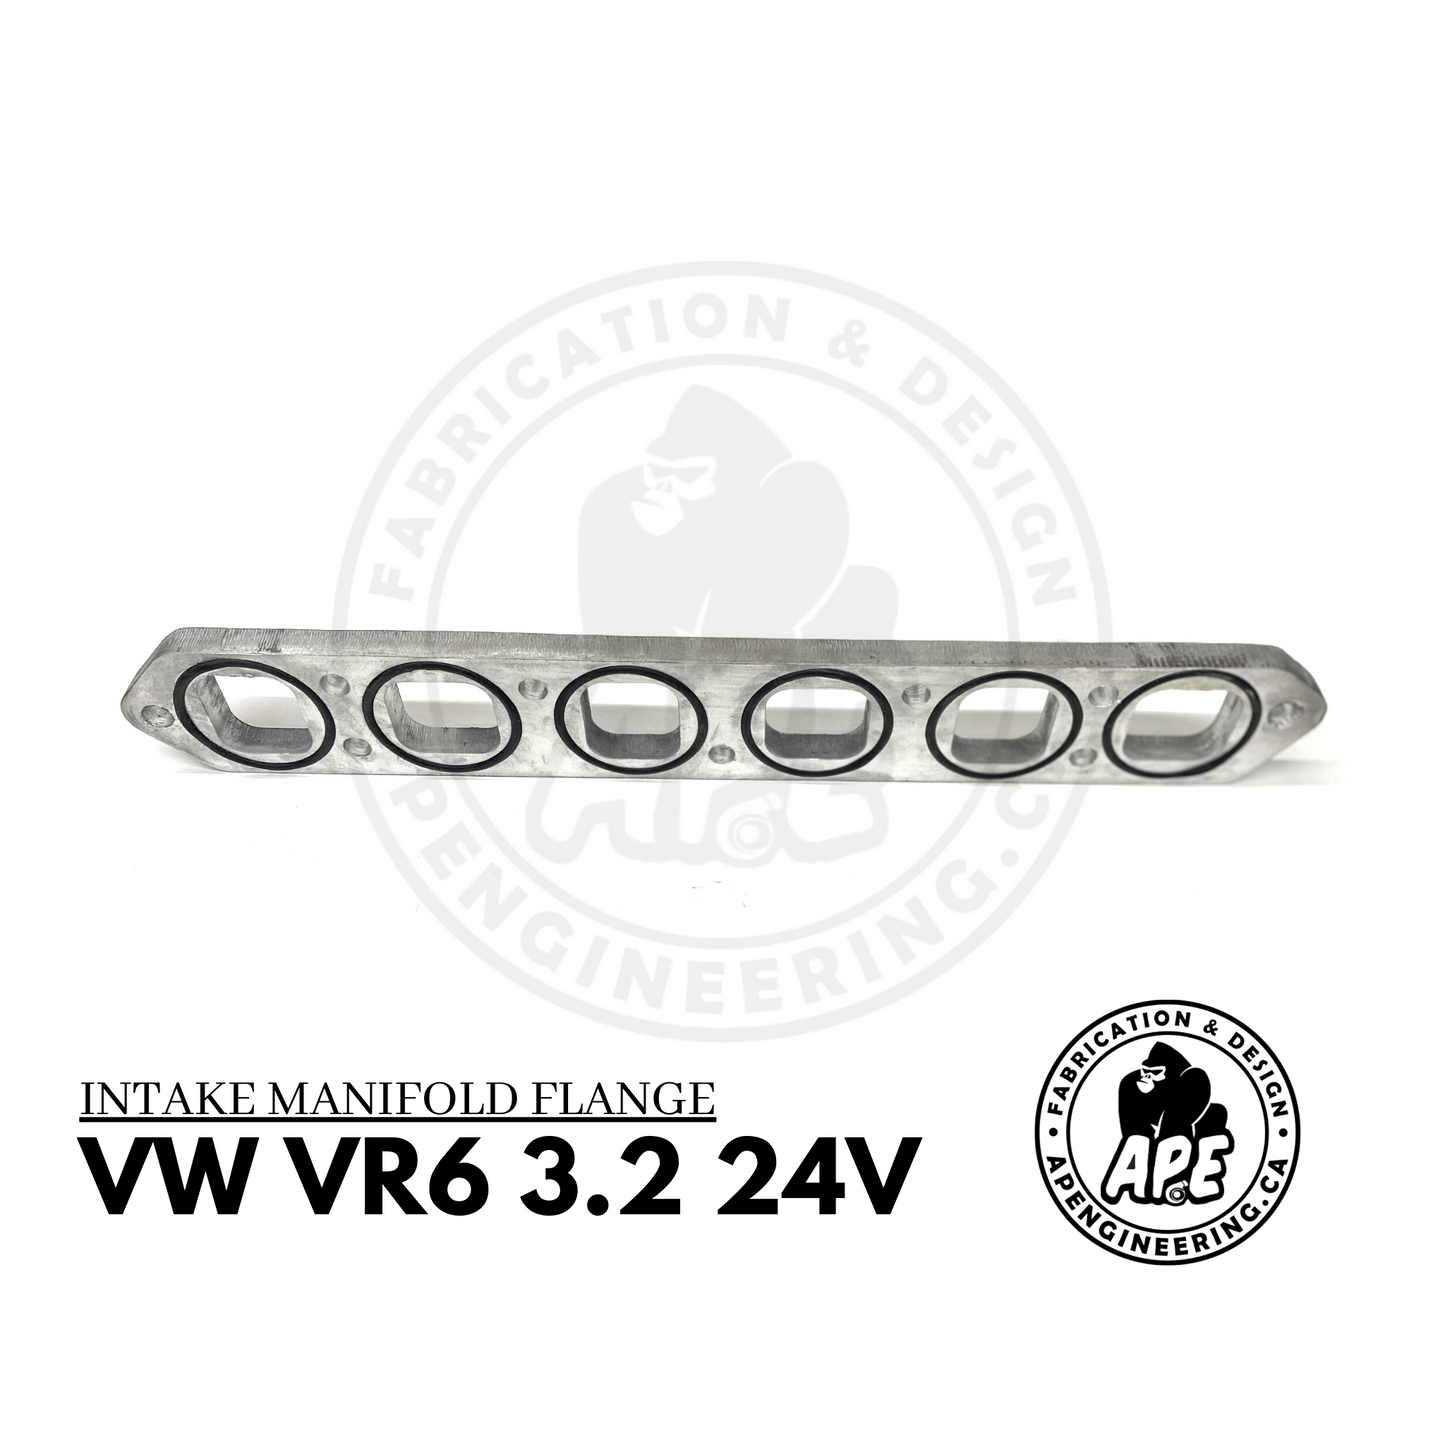 VOLKSWAGEN VW VR6 3.2 24V INTAKE MANIFOLD FLANGE - 1/2 ALUMINIUM